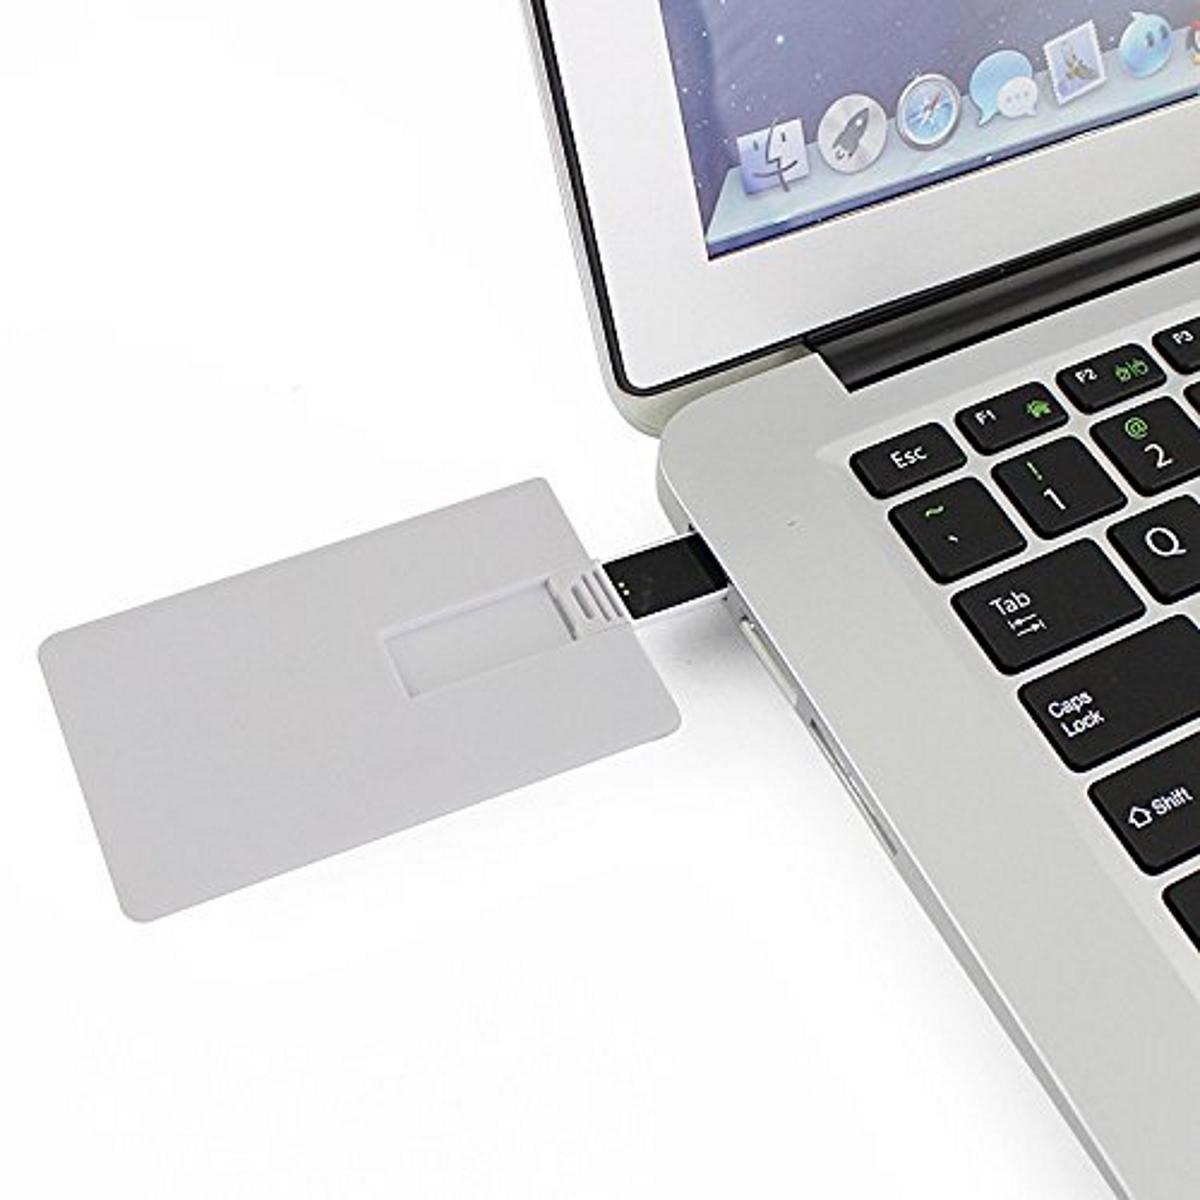 USB GERMANY ® 16 Kreditkarte GB) (Weiss, USB-Stick